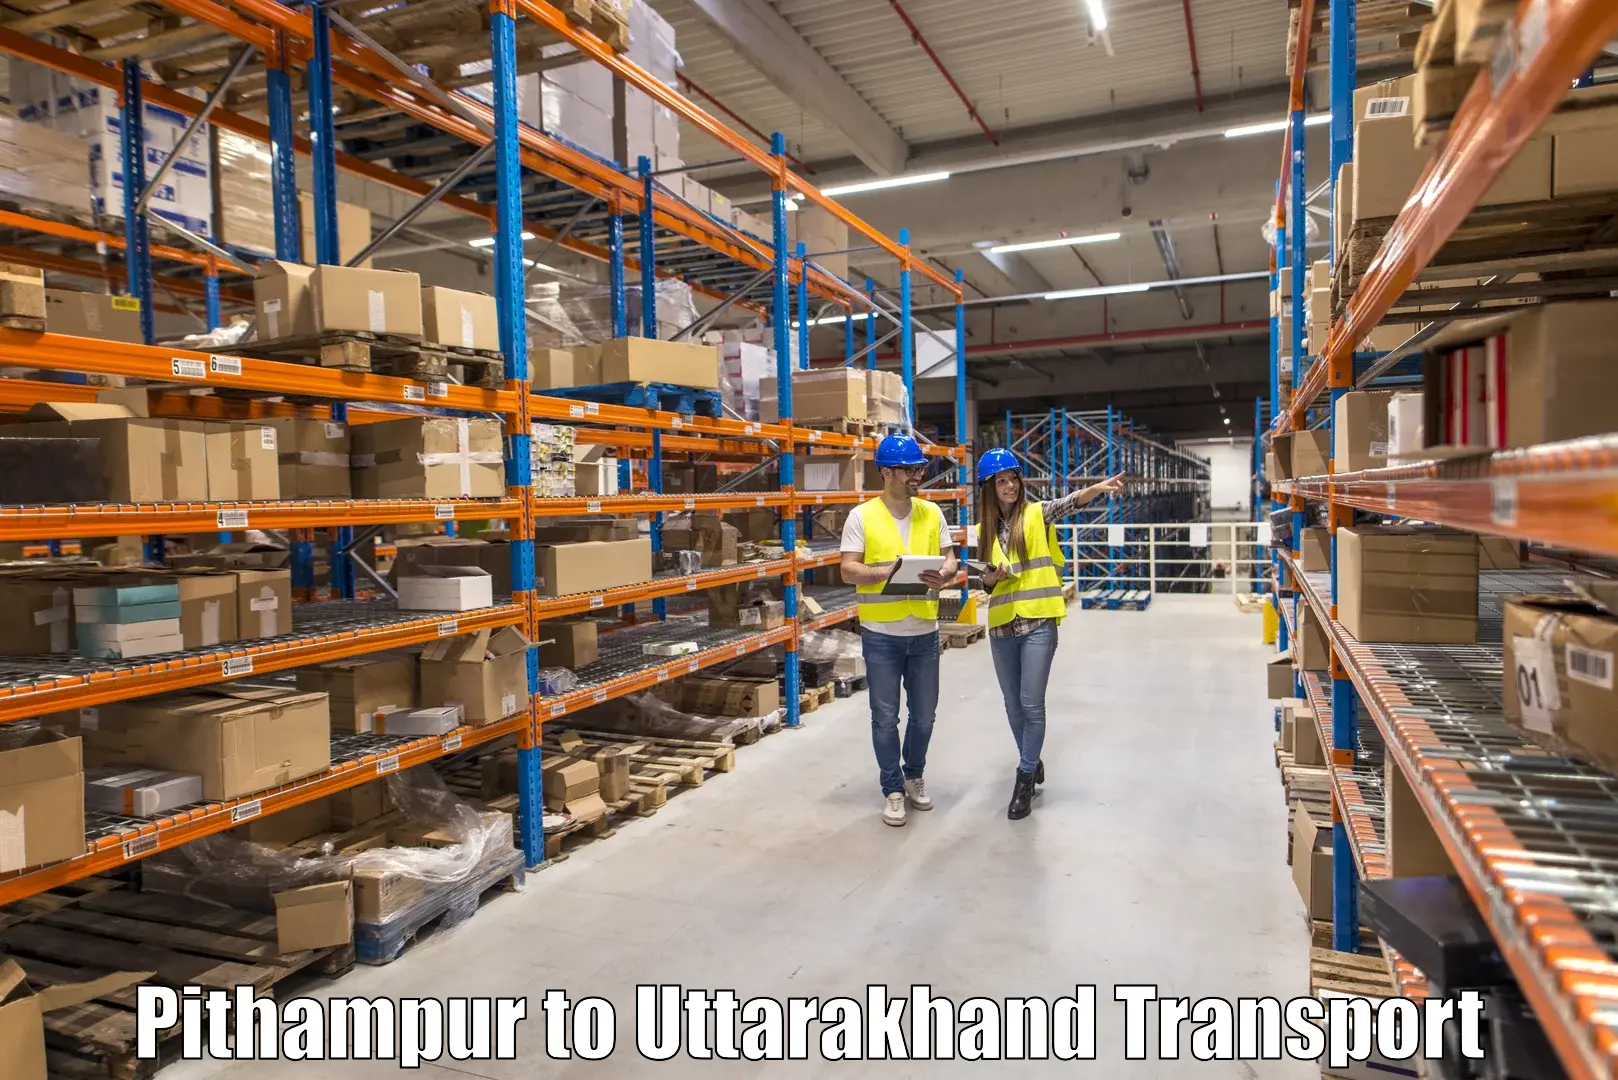 Transport in sharing Pithampur to Kashipur